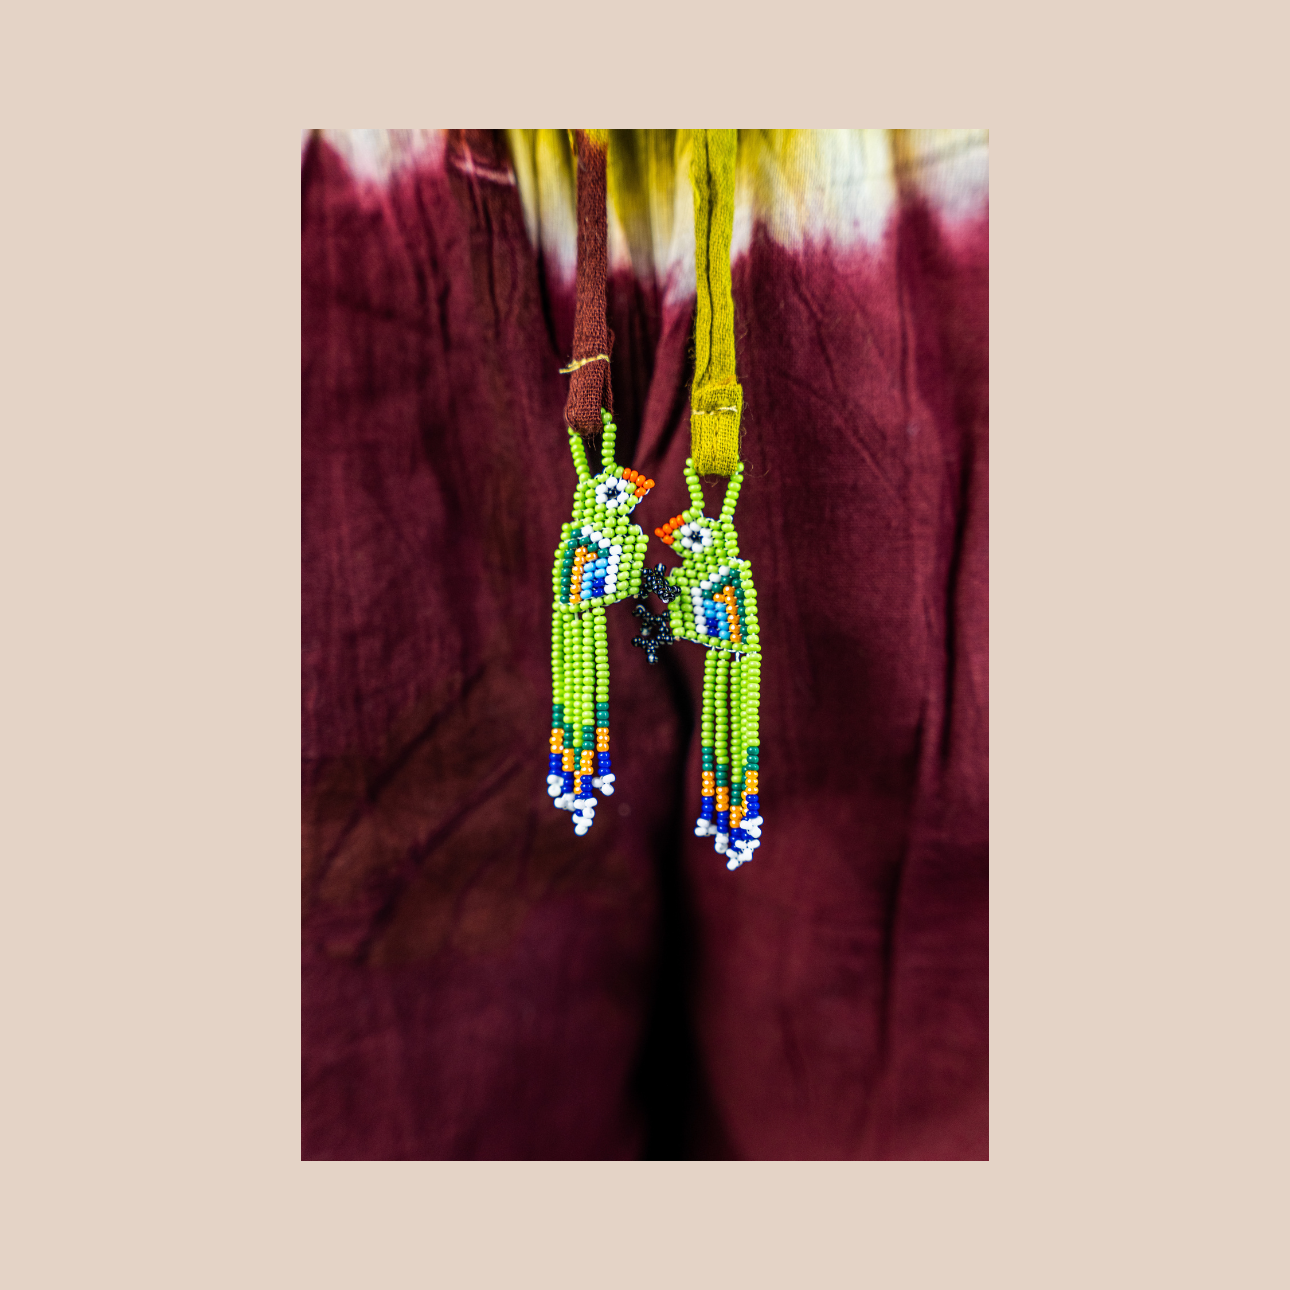 Image zoomée du pantalon Tie&Dye margarita et de ses cordons decorés de perles de Maison Badigo